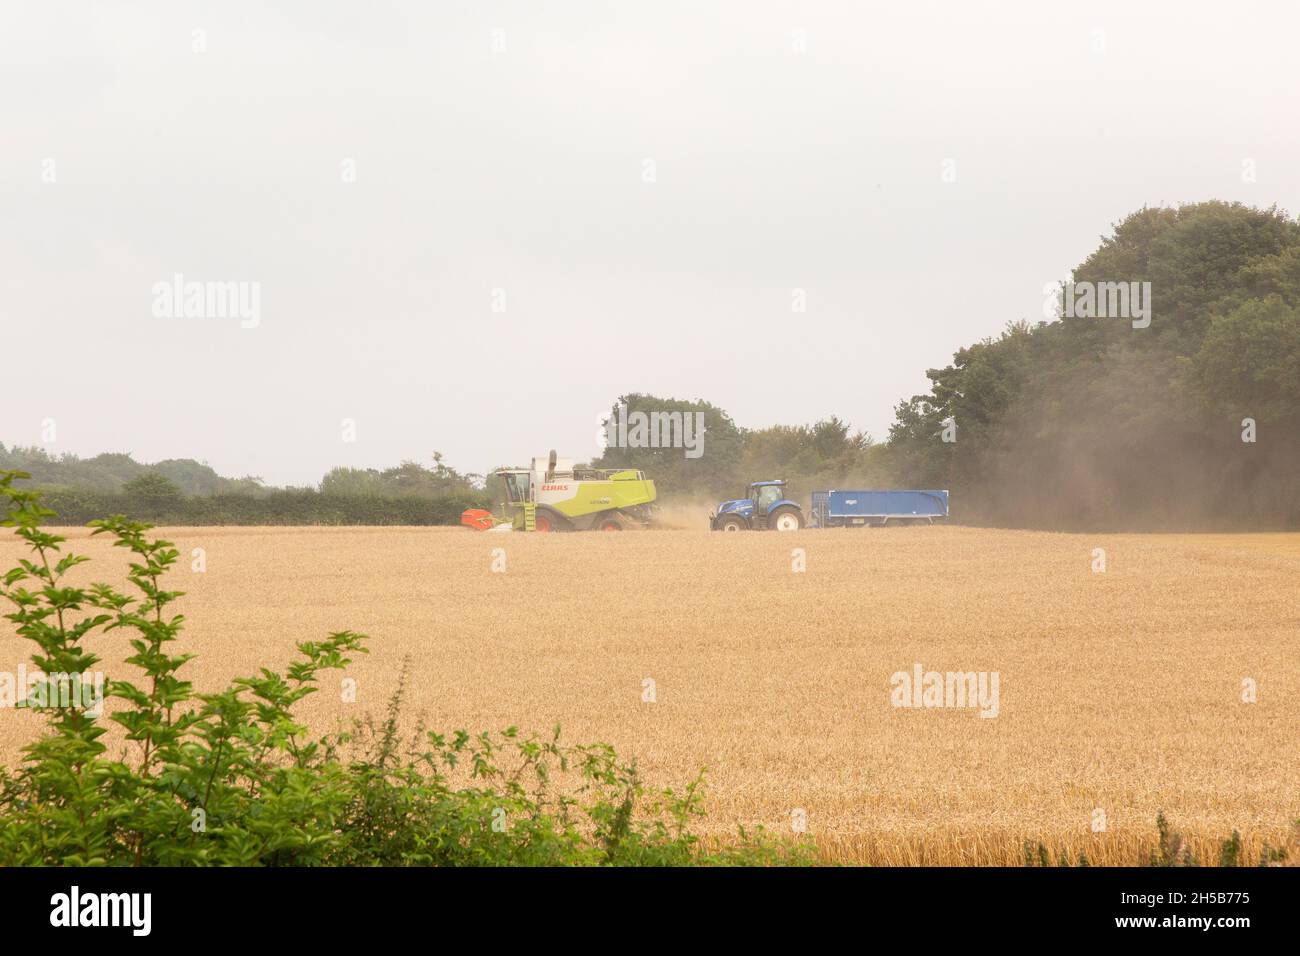 Moissonneuse-batteuse Claas travaillant dans un champ de blé, Medstead, Hampshire, Angleterre, Royaume-Uni. Banque D'Images